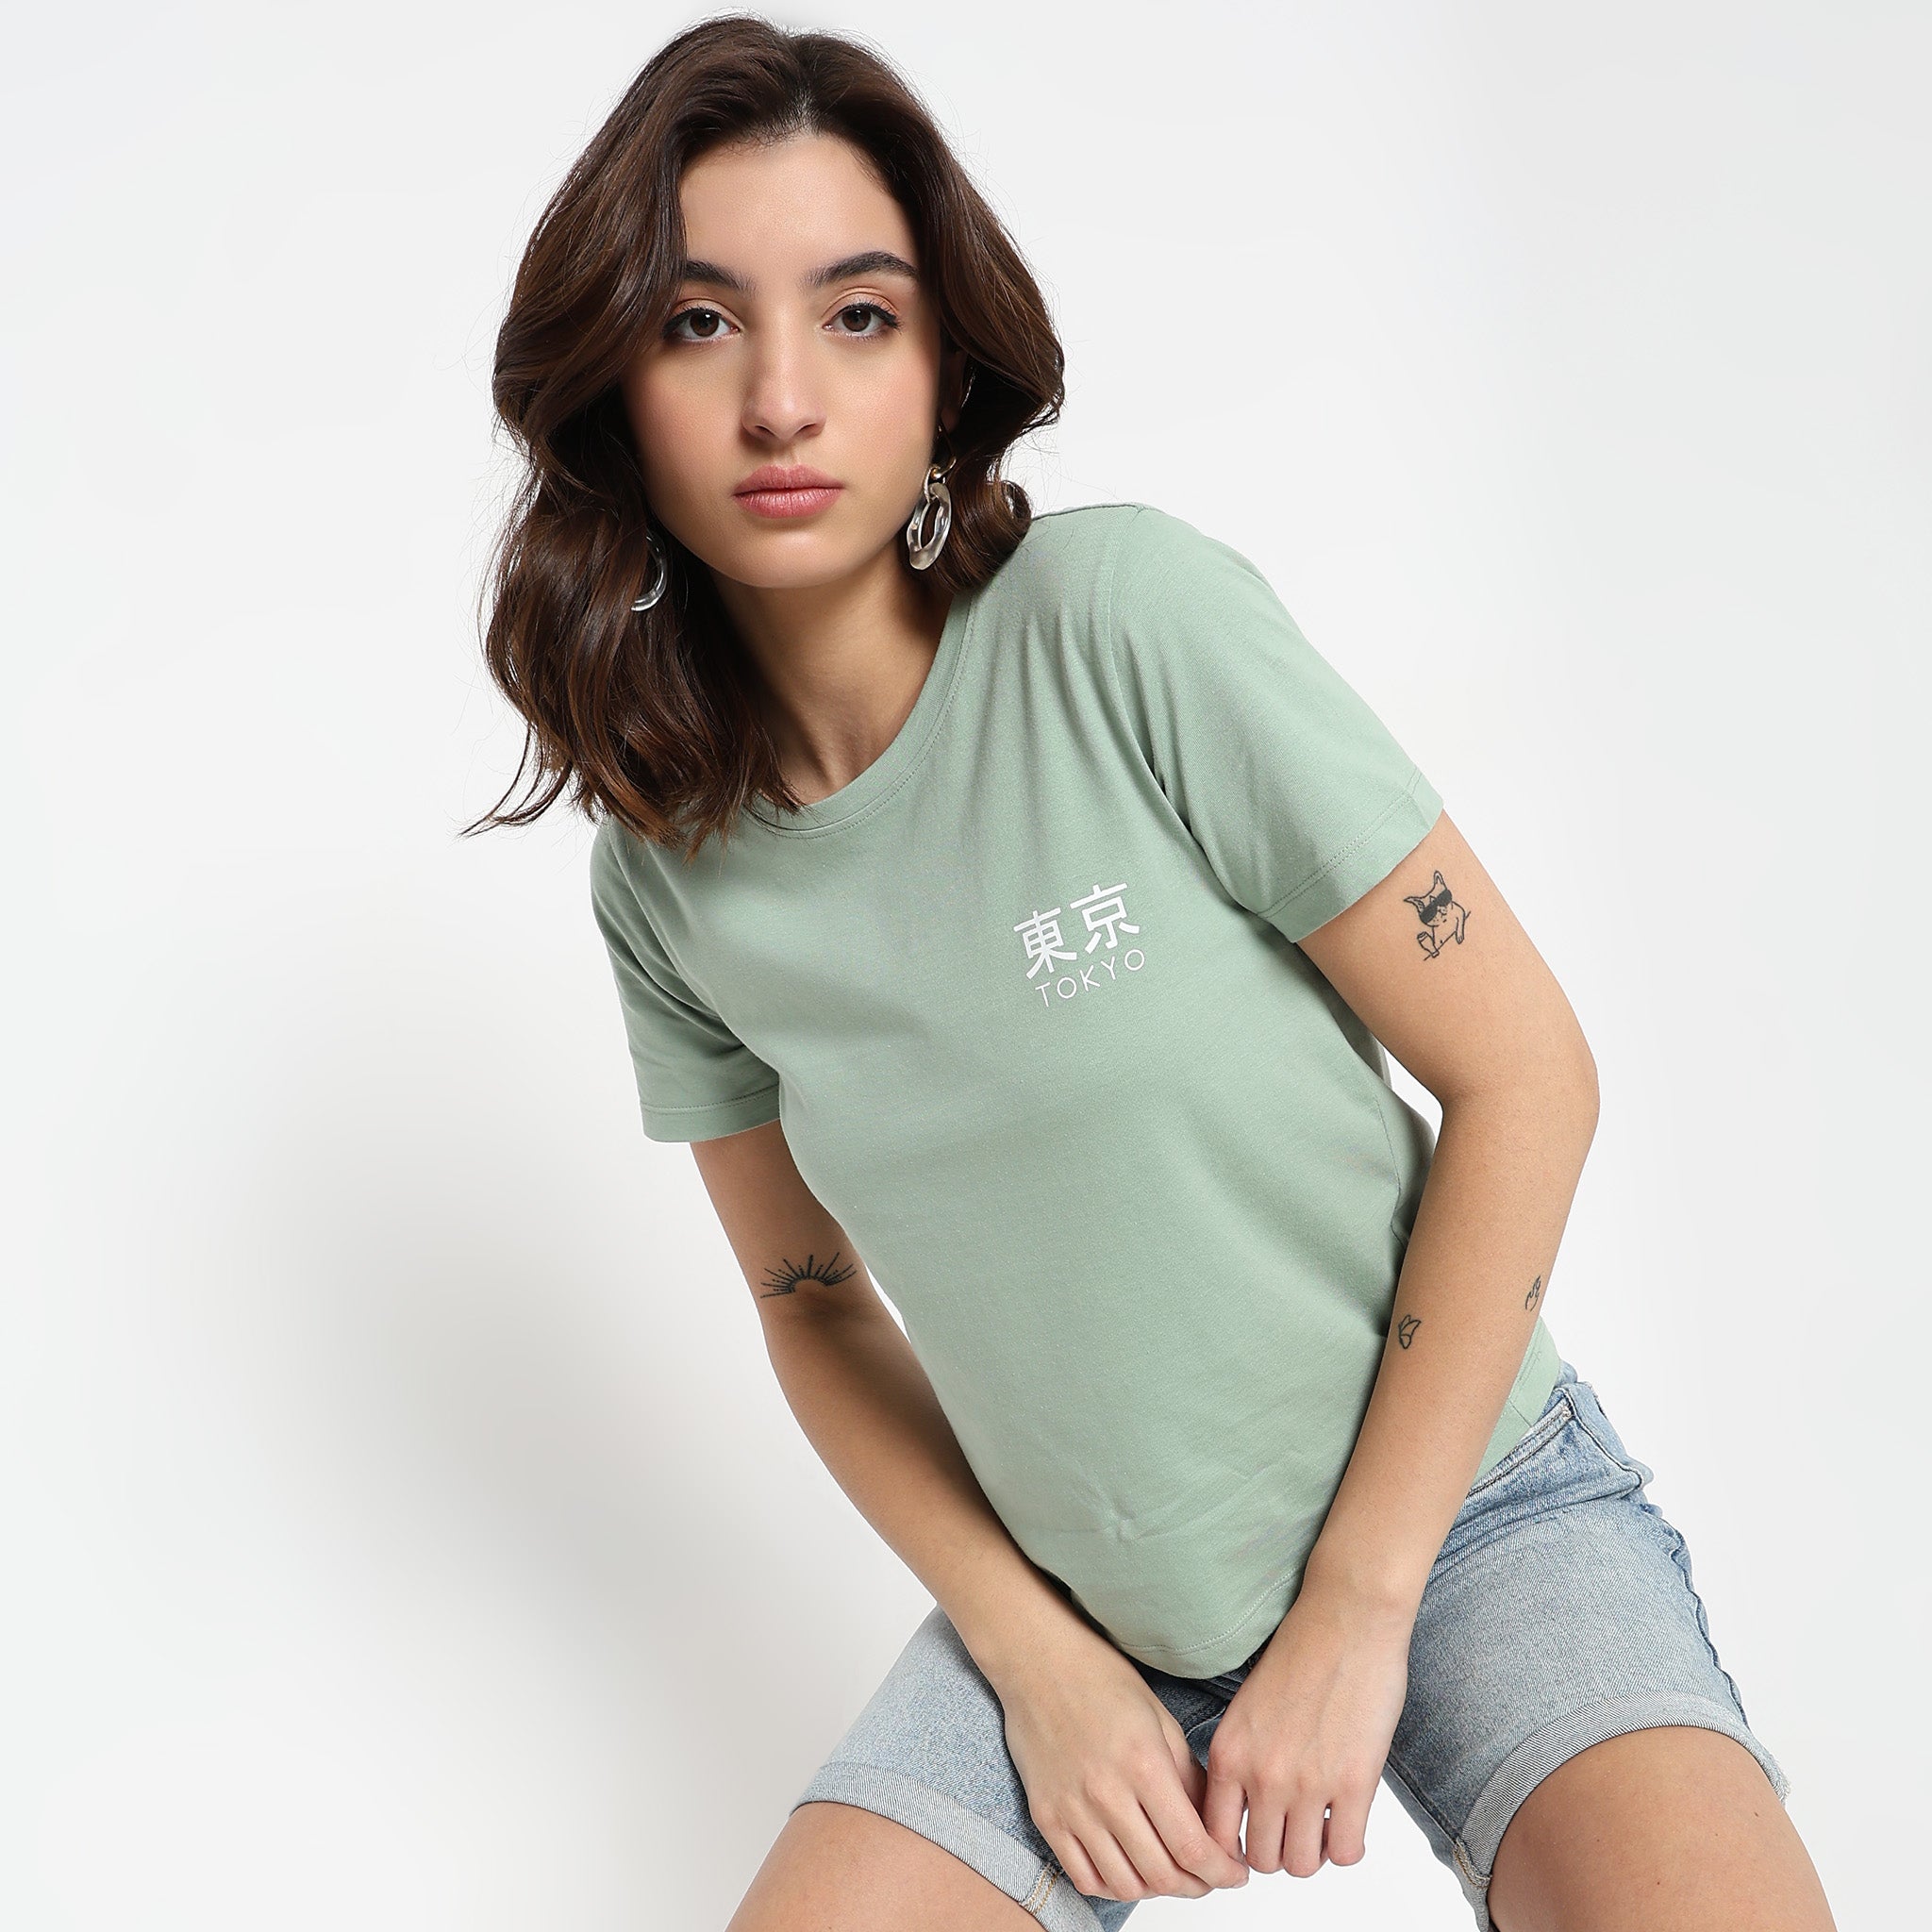 Women's T-Shirts & Tops - Buy Online